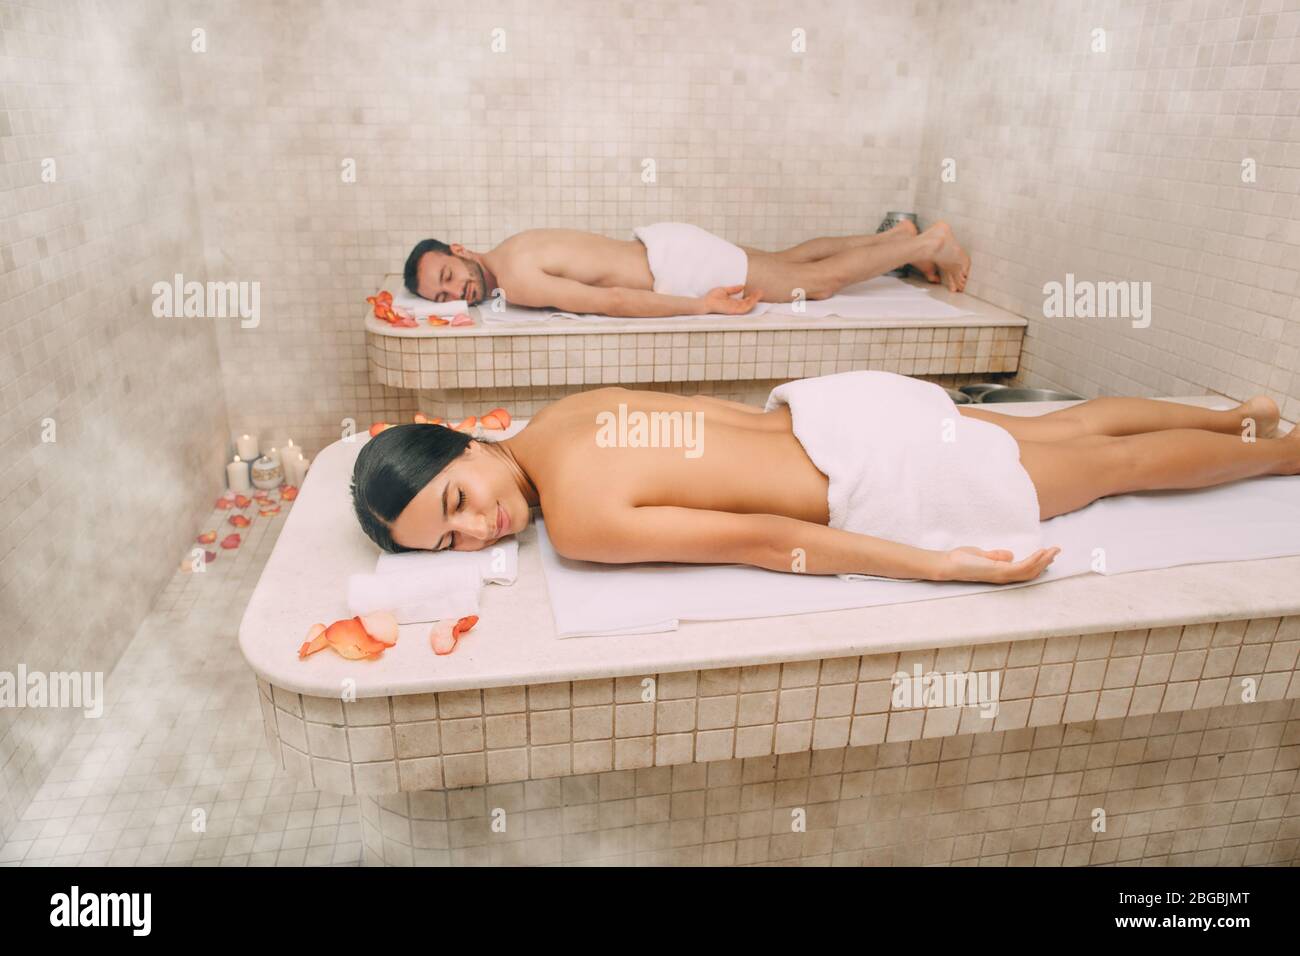 Un beau couple a passé du temps libre dans un bain turc. La vapeur chaude réchauffait les corps d'un homme et d'une femme dans un hammam Banque D'Images